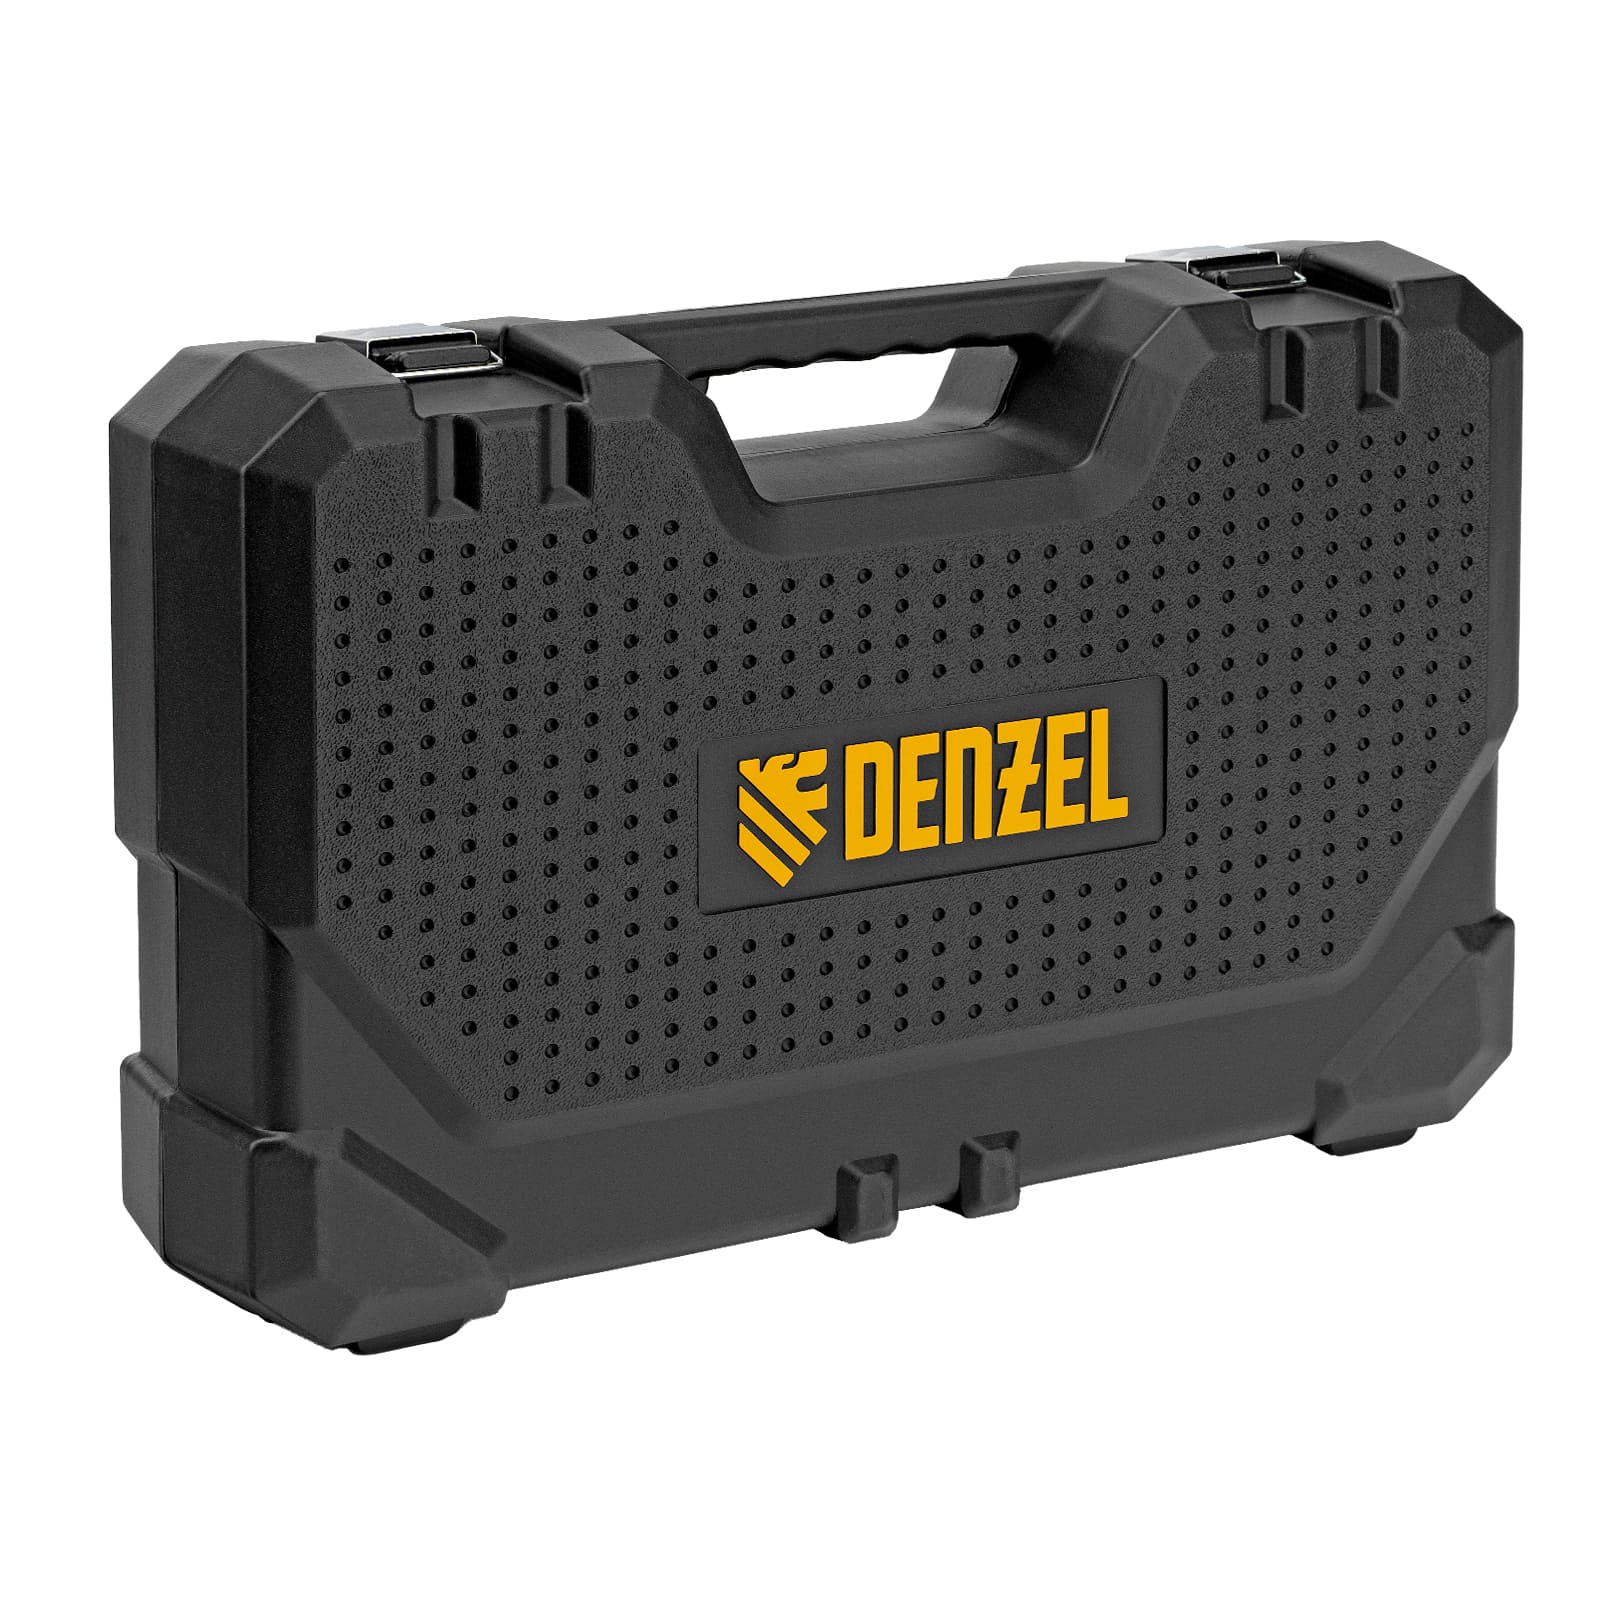 Аккумуляторный перфоратор DENZEL BLRH-IB-26 (аккум. система Denzel Battery System 18V, бесщёточный)